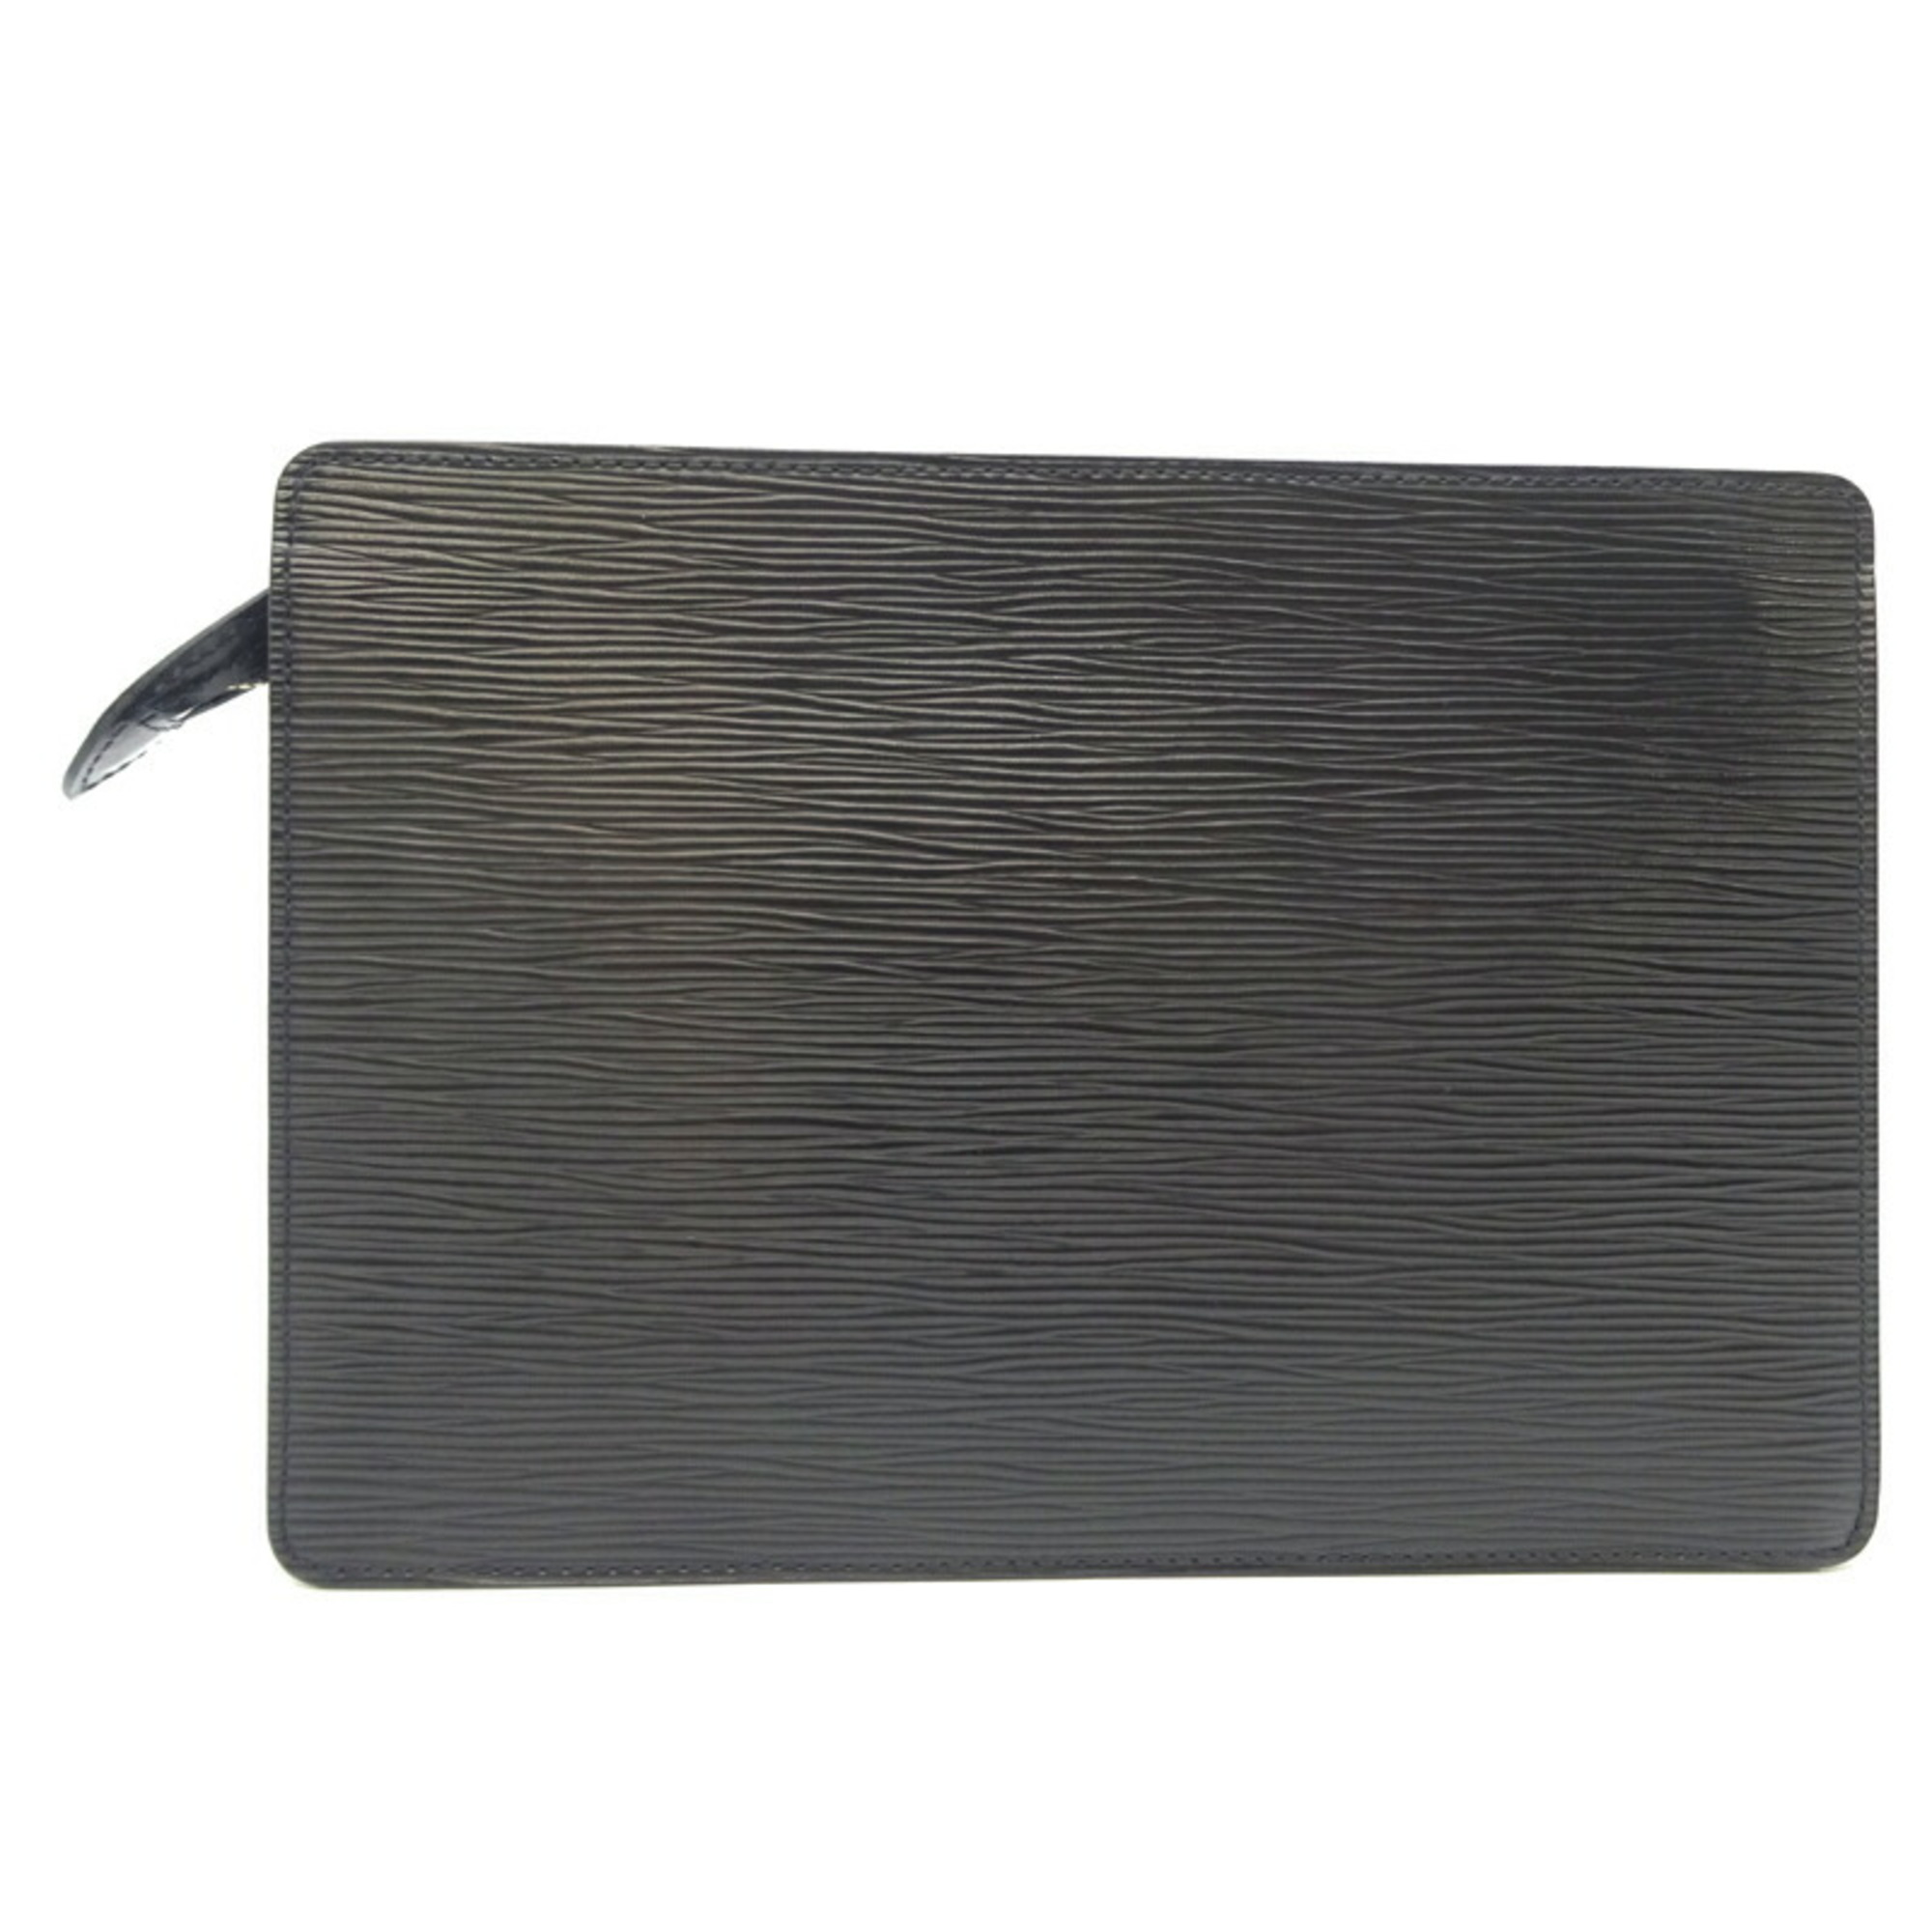 Louis Vuitton Pochette Homme Women's Second Bag M52522 Epi Noir (Black)